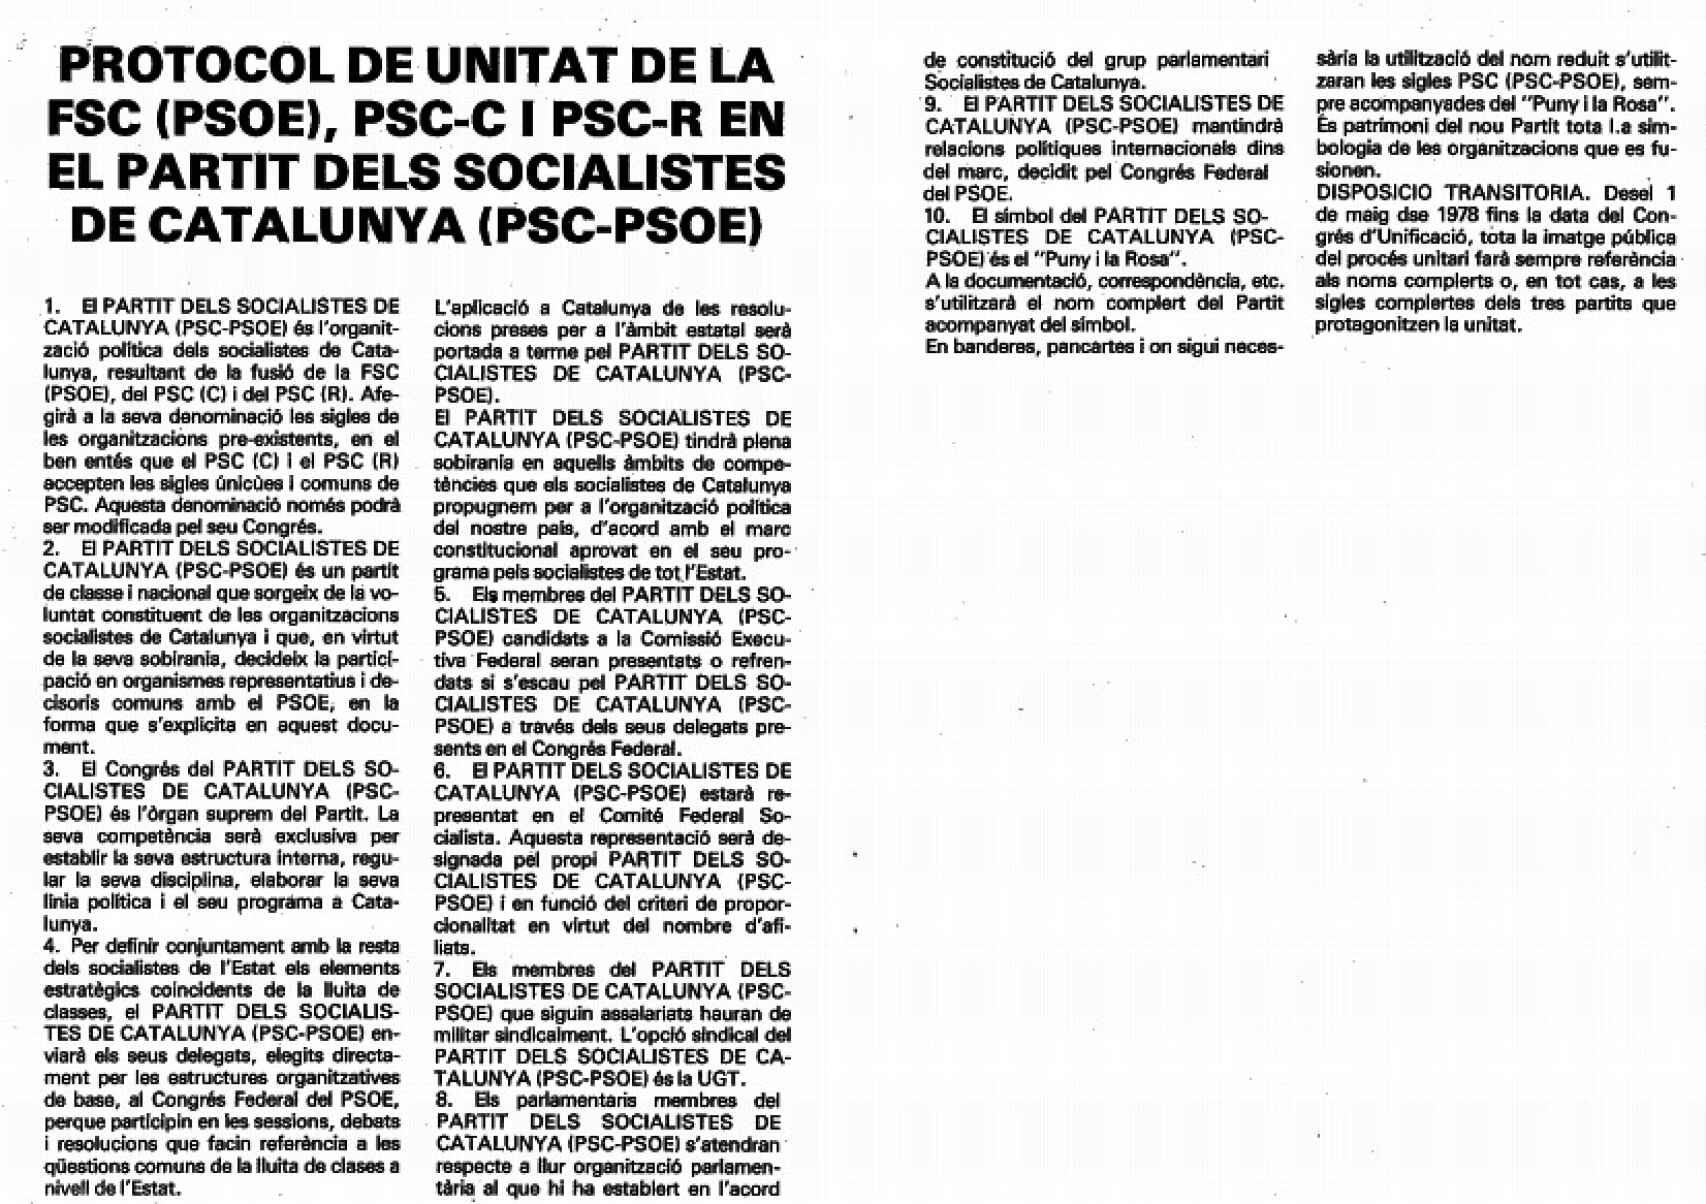 Protocolo de acuerdo PSC-PSOE, vigente desde 1978.